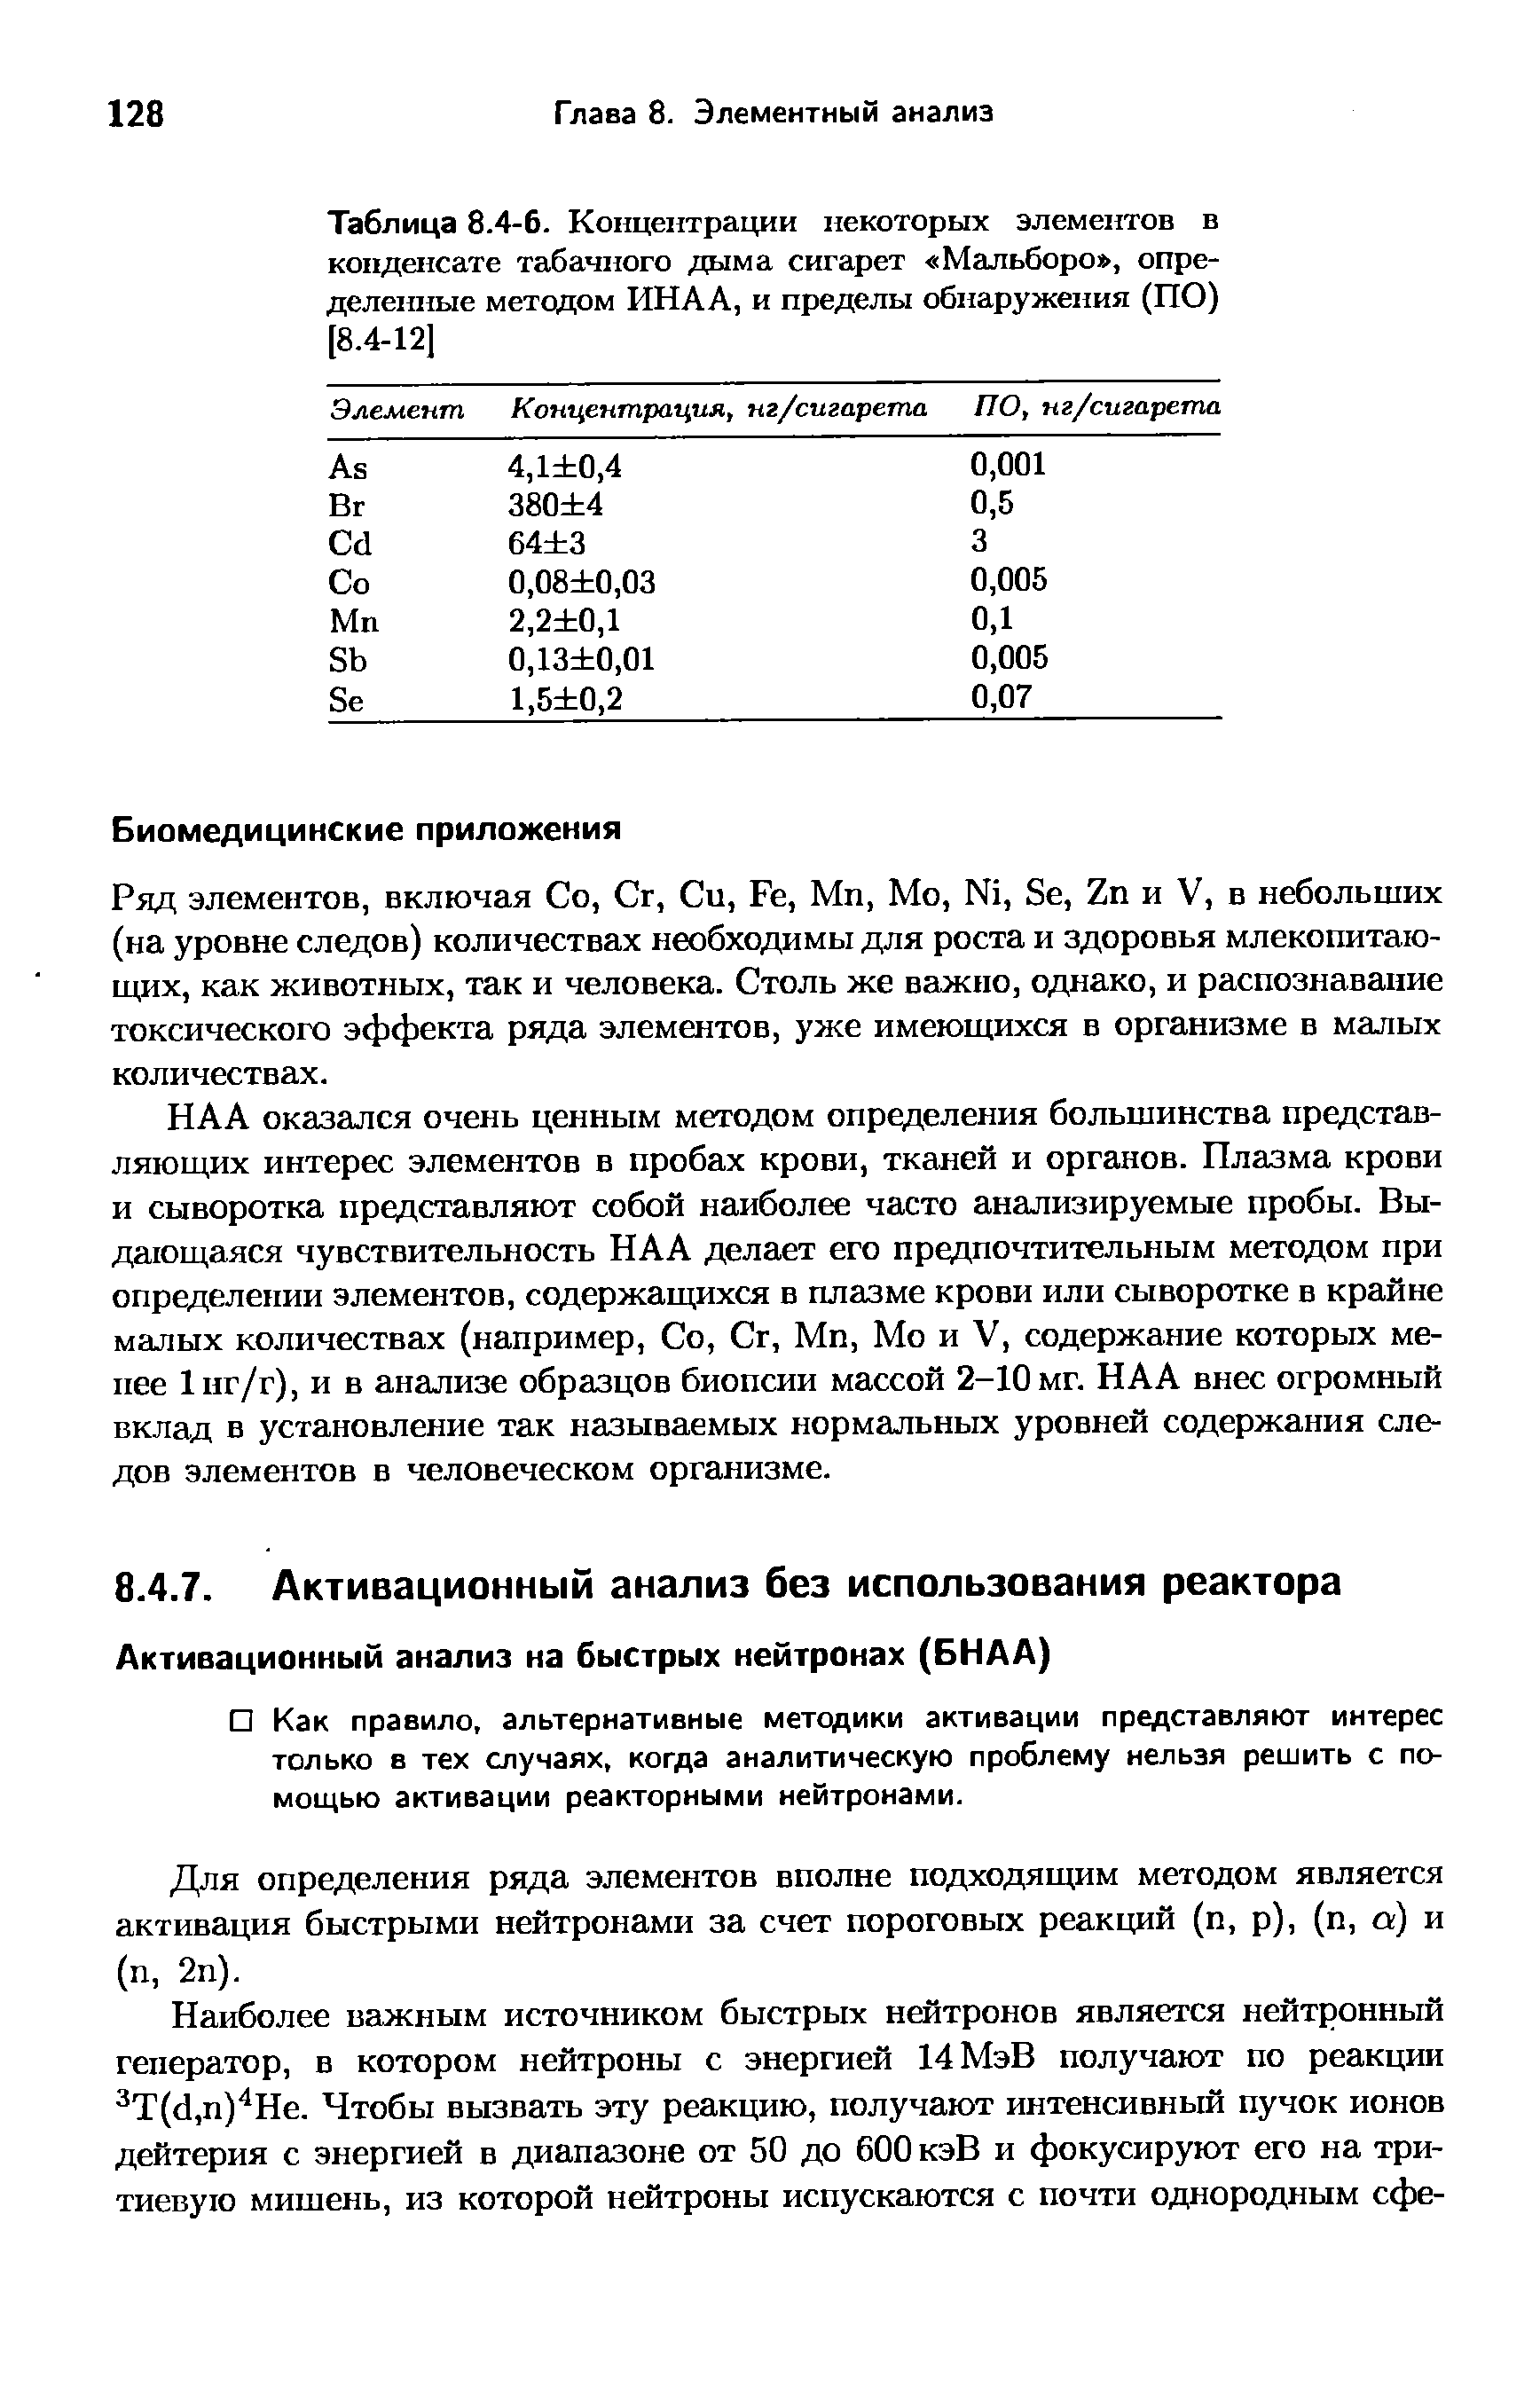 Для определения ряда элементов вполне подходящим методом является активация быстрыми нейтронами за счет пороговых реакций (п, р), (п, а) и (п, 2п).